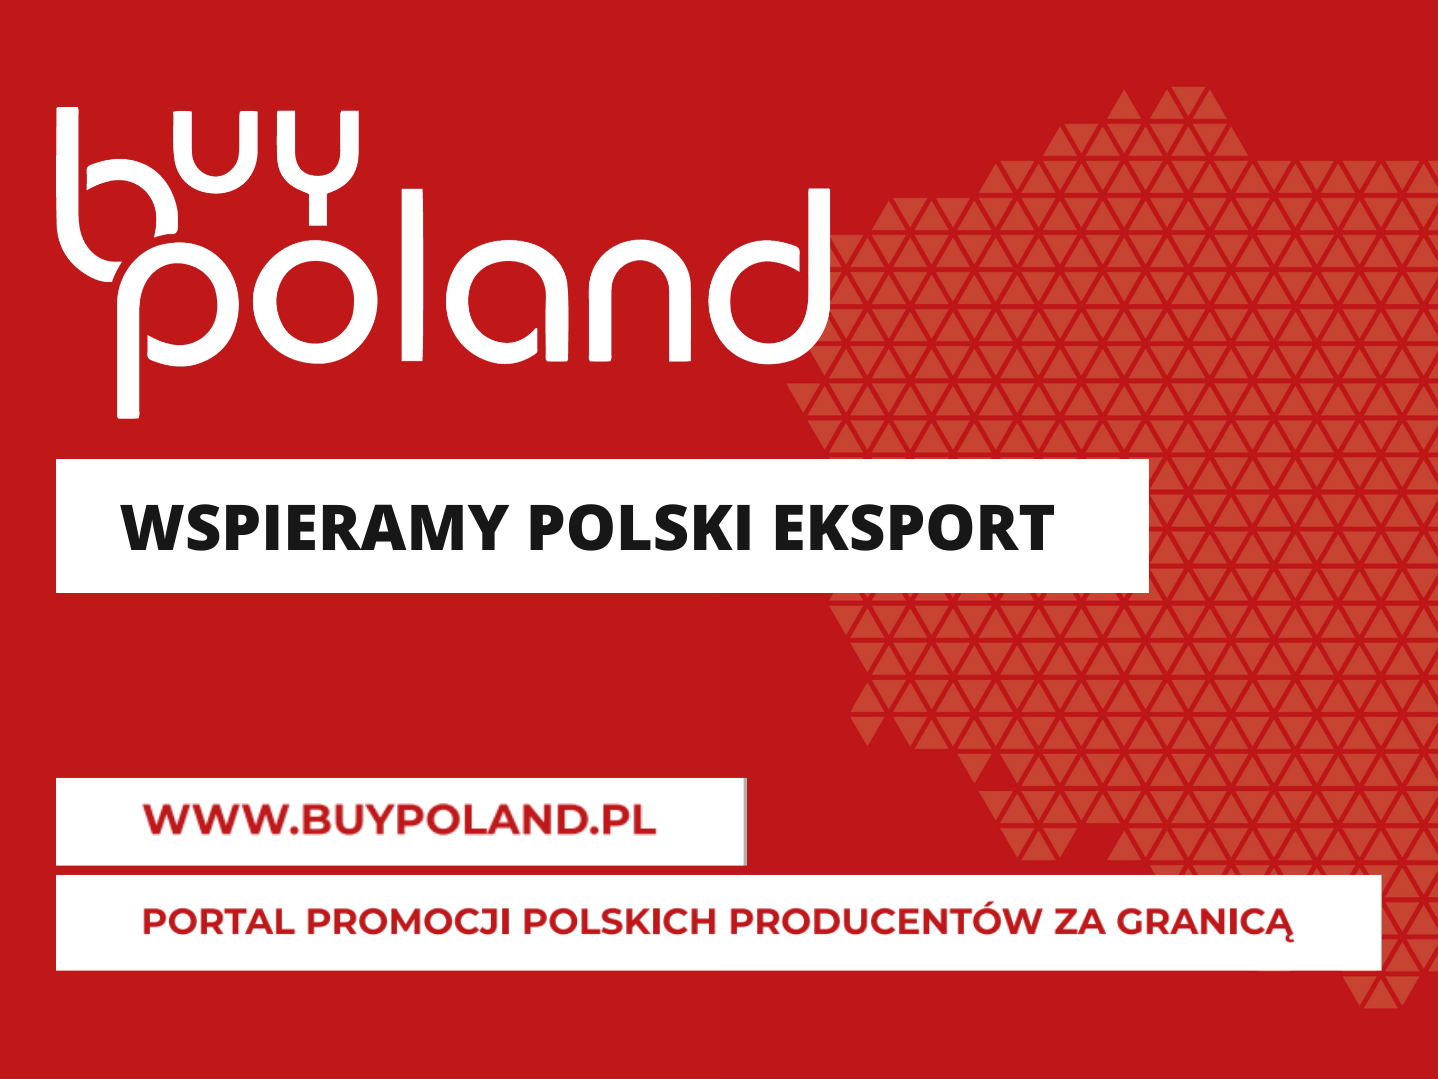 Buy Poland przekracza kolejne granice